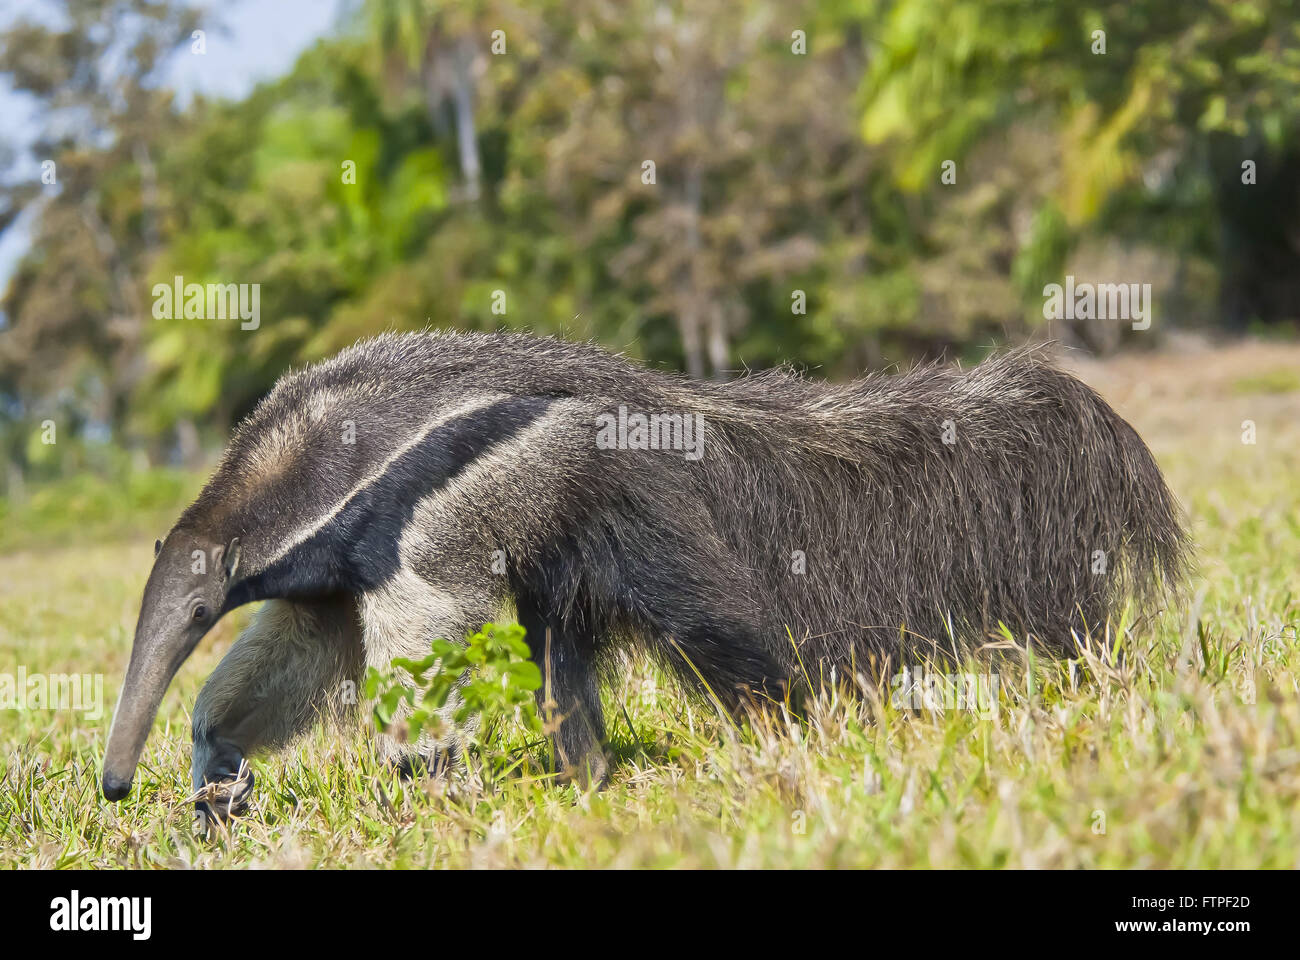 Anteater - threatened animal extinction - Myrmecophaga tridactyla Stock Photo